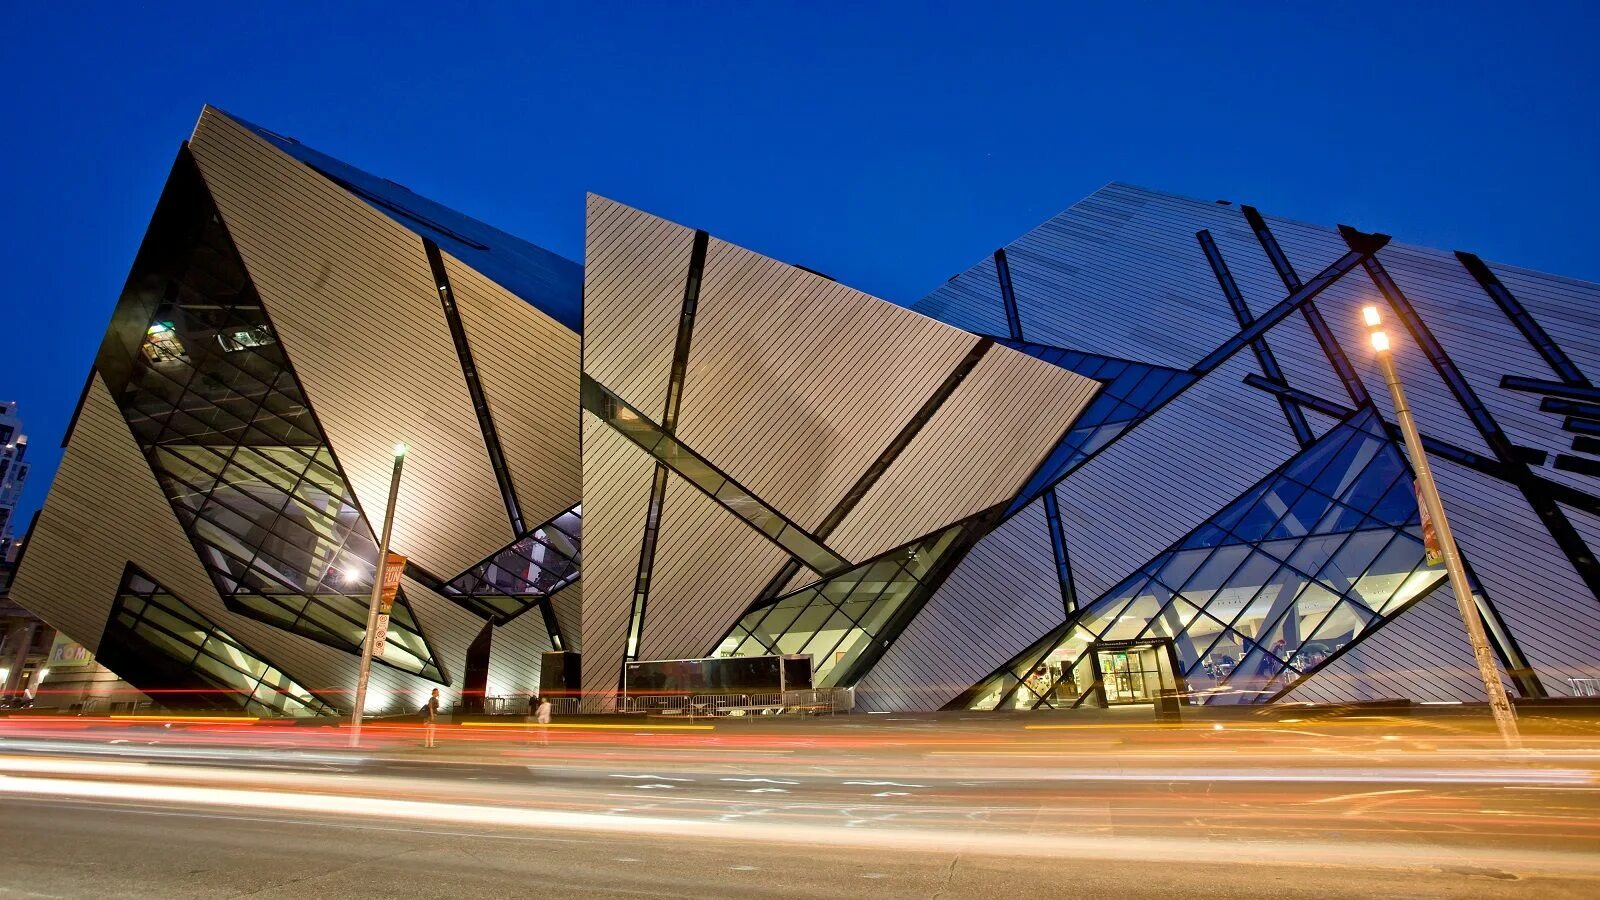 Архитектурное разнообразие. Королевский музей Онтарио Даниэль Либескинд. Королевский музей Онтарио Торонто. Даниэль Либескинд музей в Онтарио. Королевский музей Онтарио архитектура.